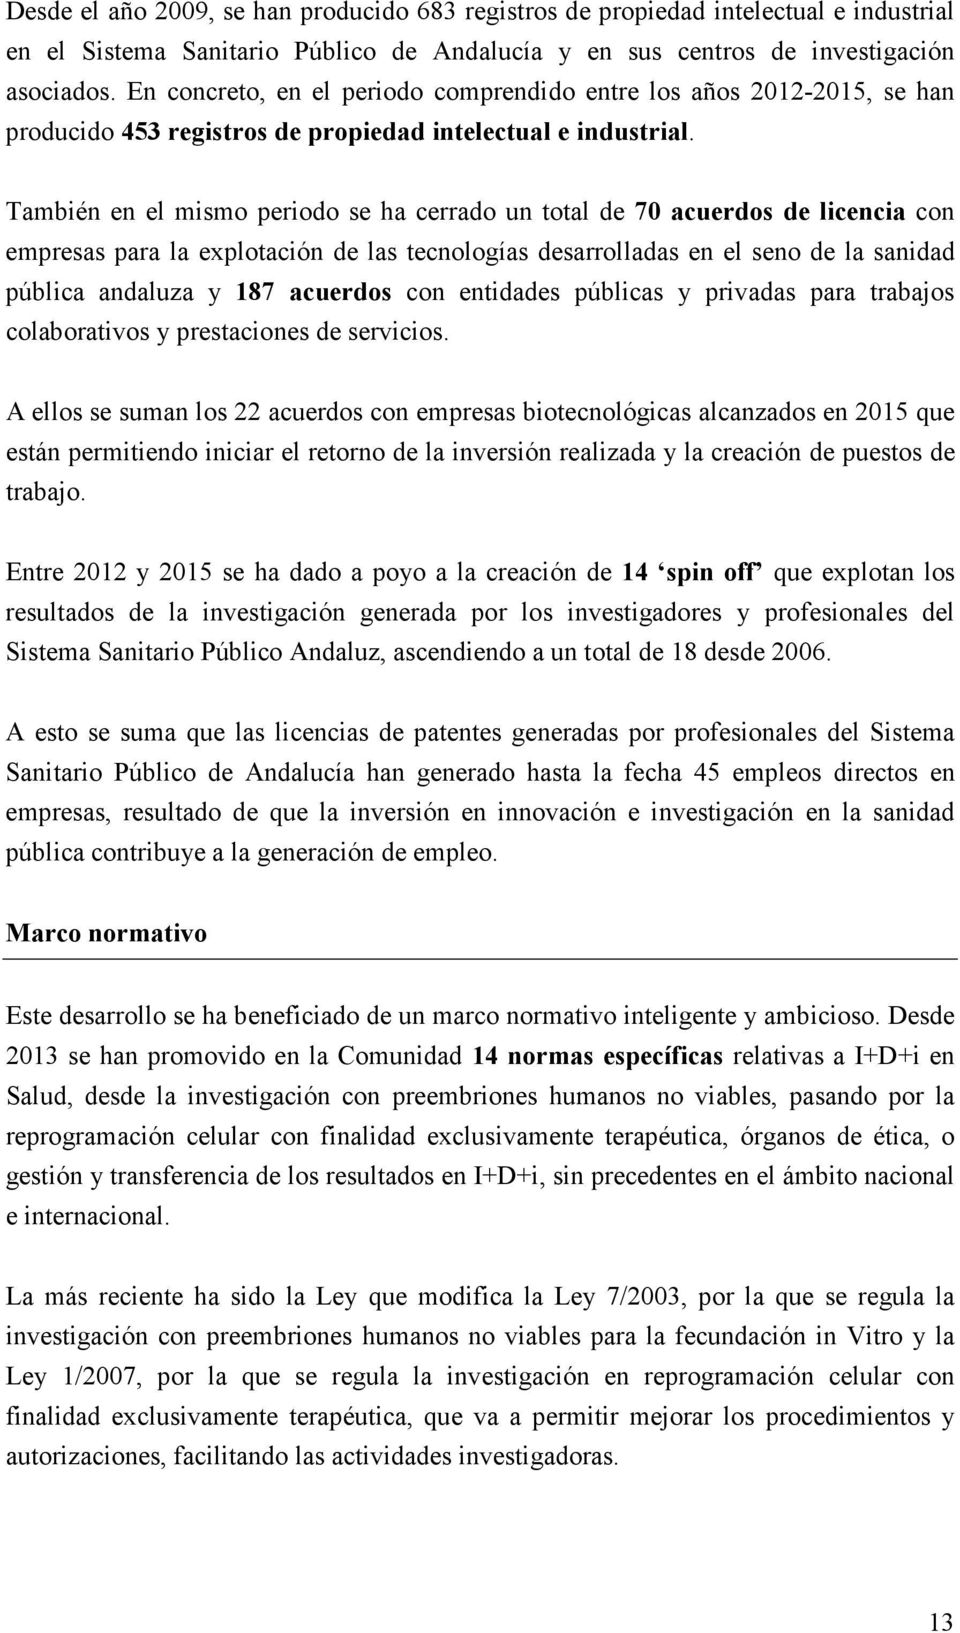 También en el mismo periodo se ha cerrado un total de 70 acuerdos de licencia con empresas para la explotación de las tecnologías desarrolladas en el seno de la sanidad pública andaluza y 187